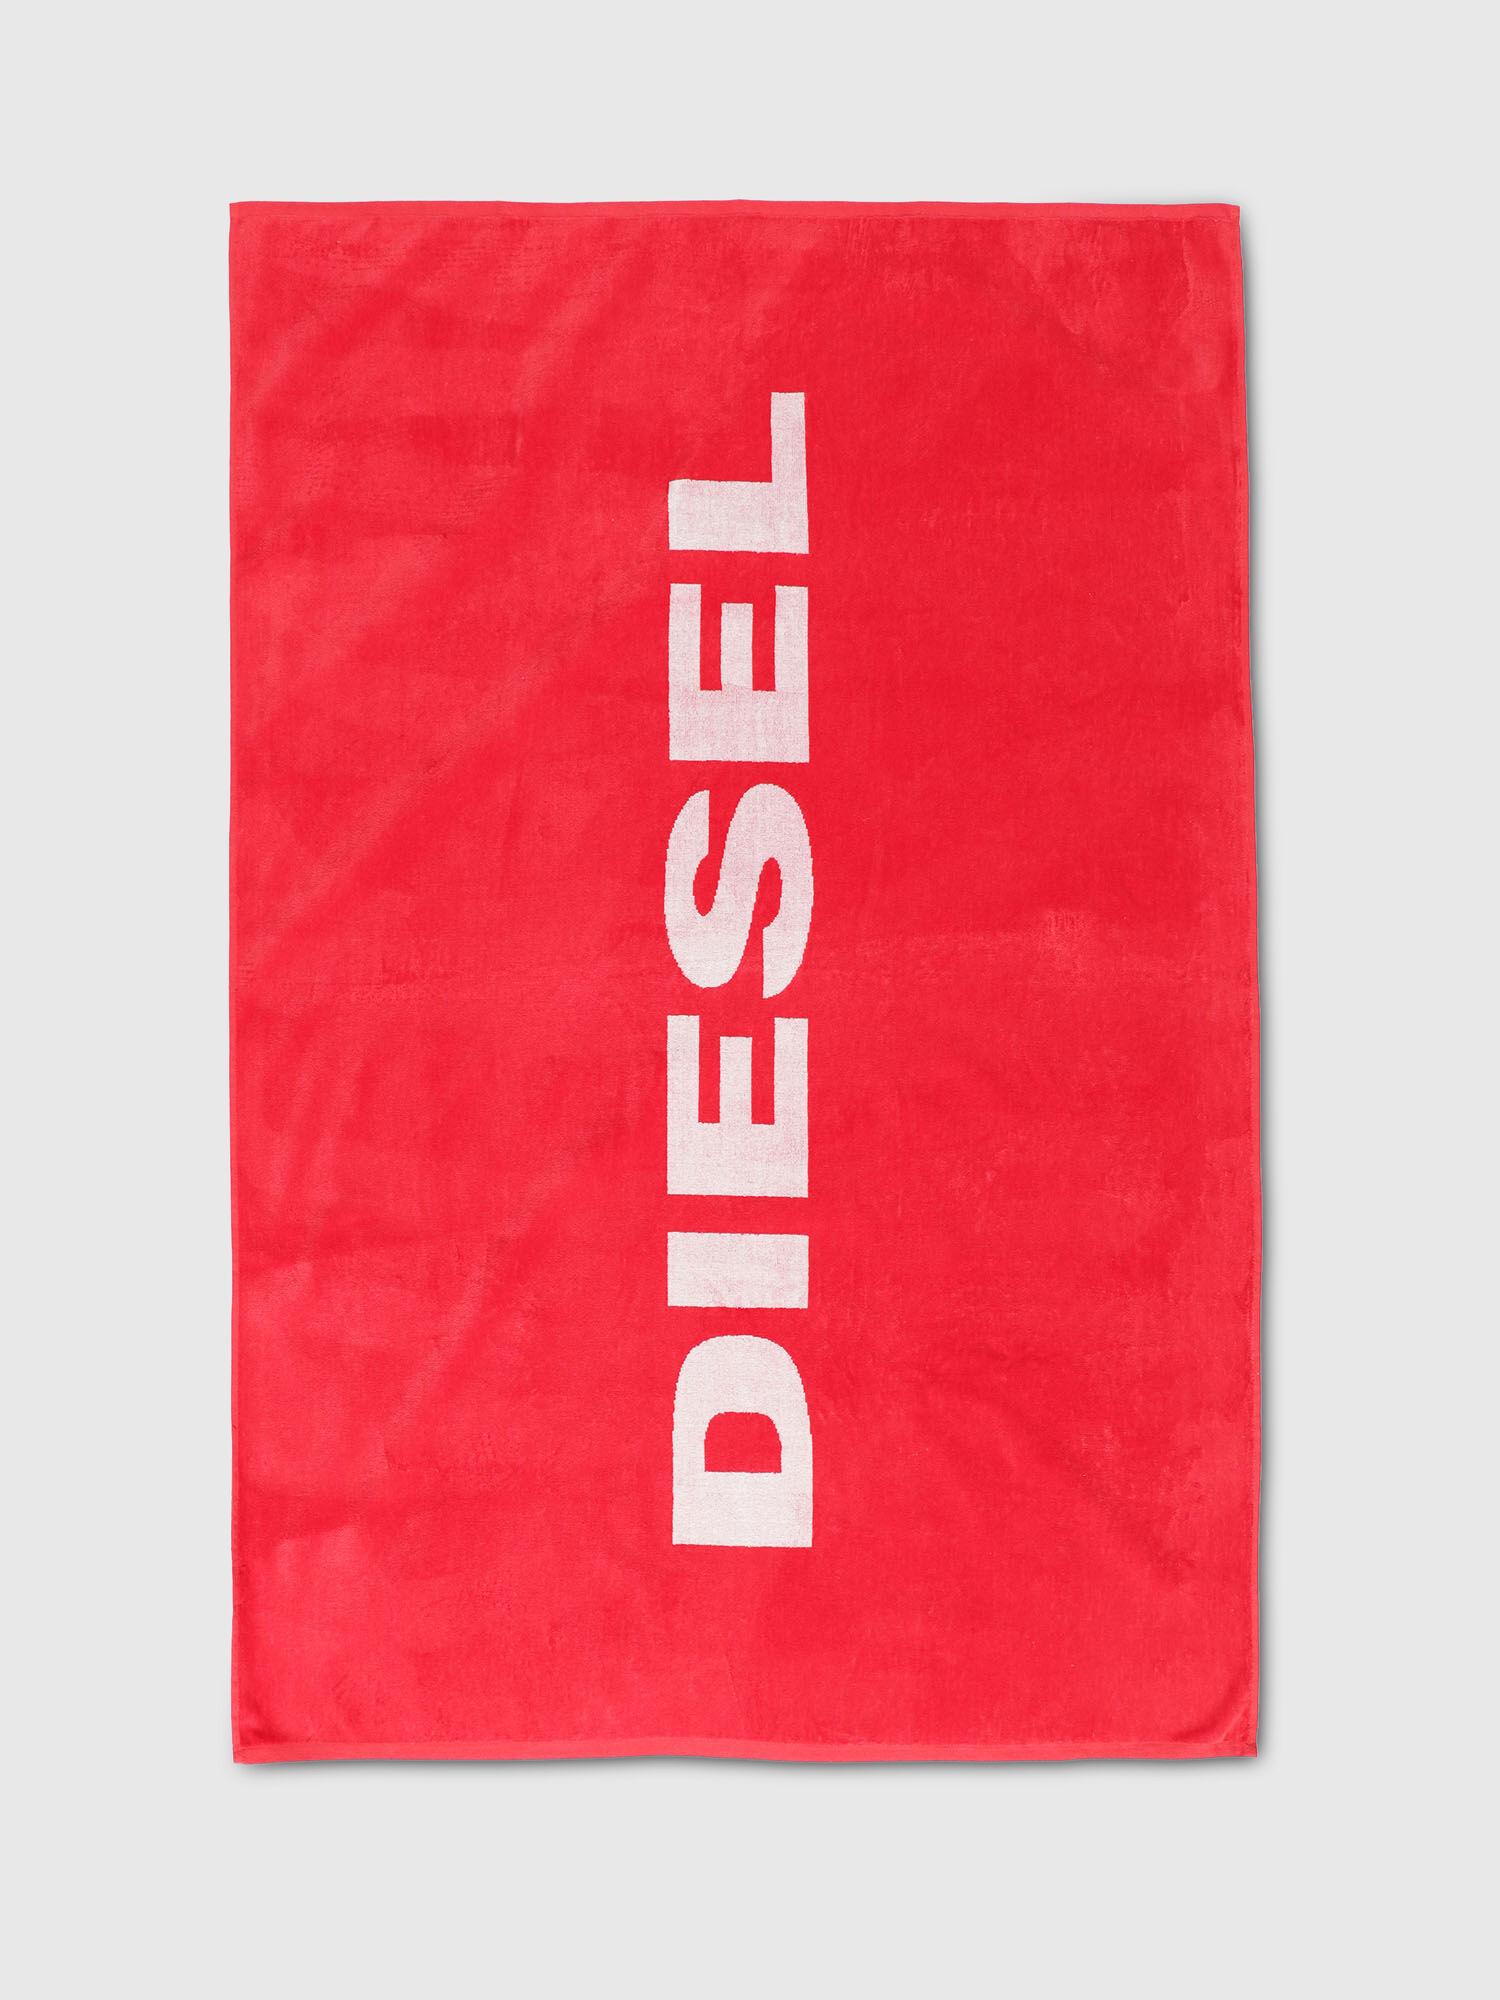 Diesel - HIBO, Fire Red - Image 1